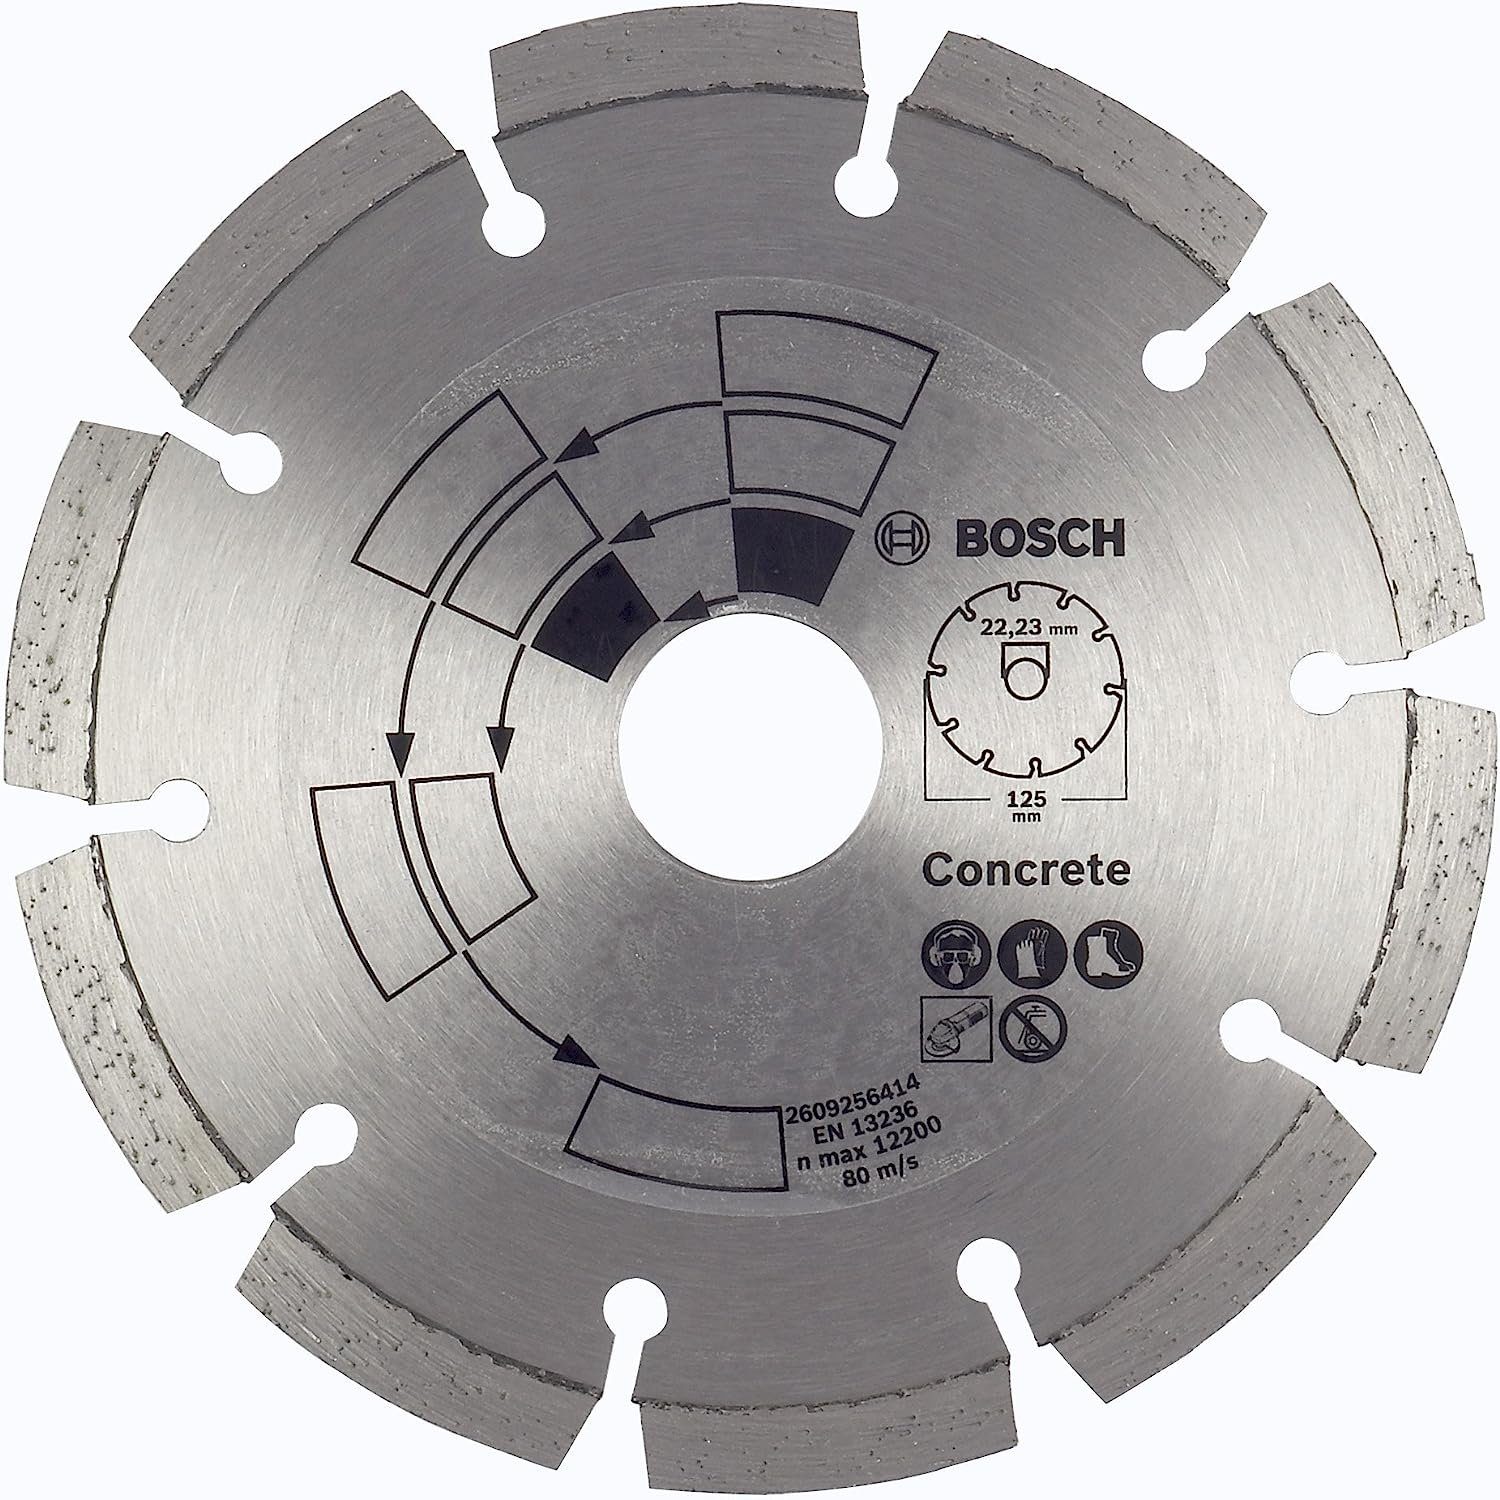 BOSCH Bohrfutter DIY Beton Beton/Granit, 2609256414 Diamanttrennscheibe 125 Top Bosch